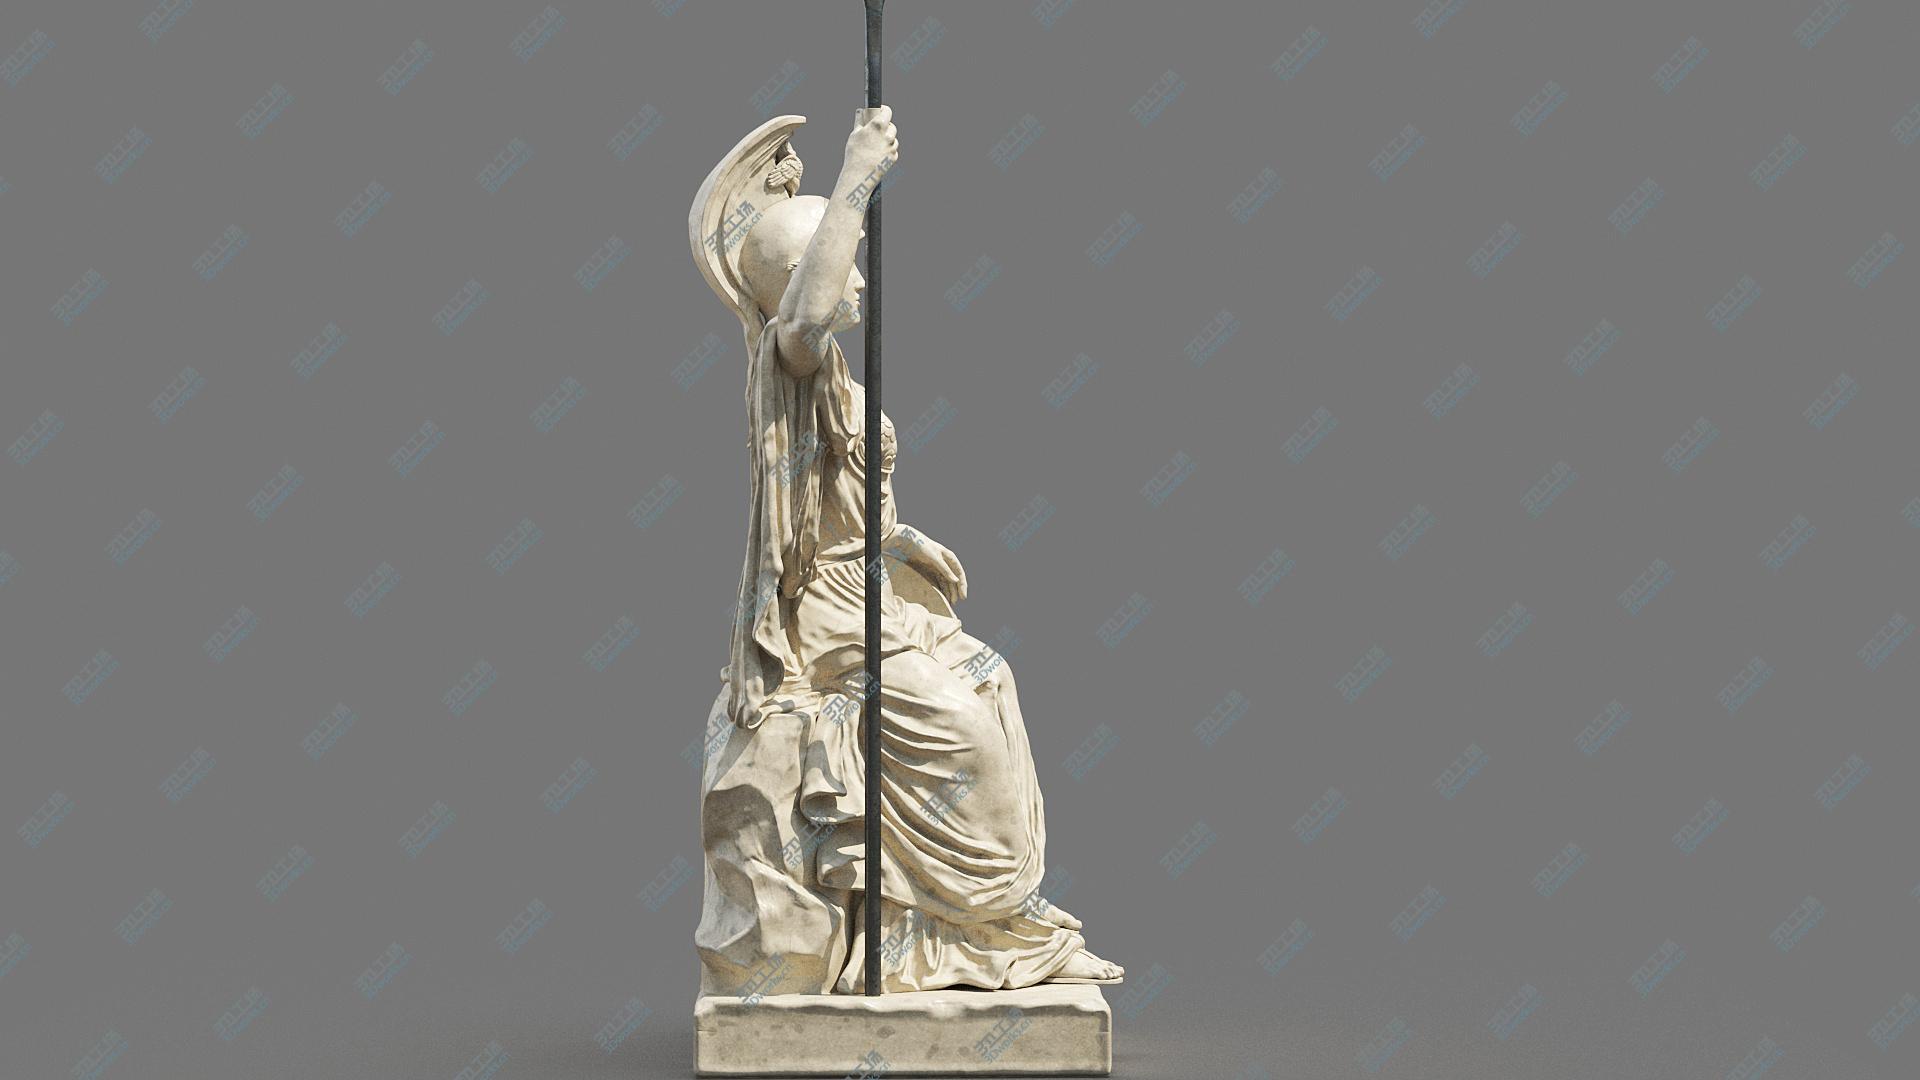 images/goods_img/202104094/Minerva Statue 3D model/4.jpg